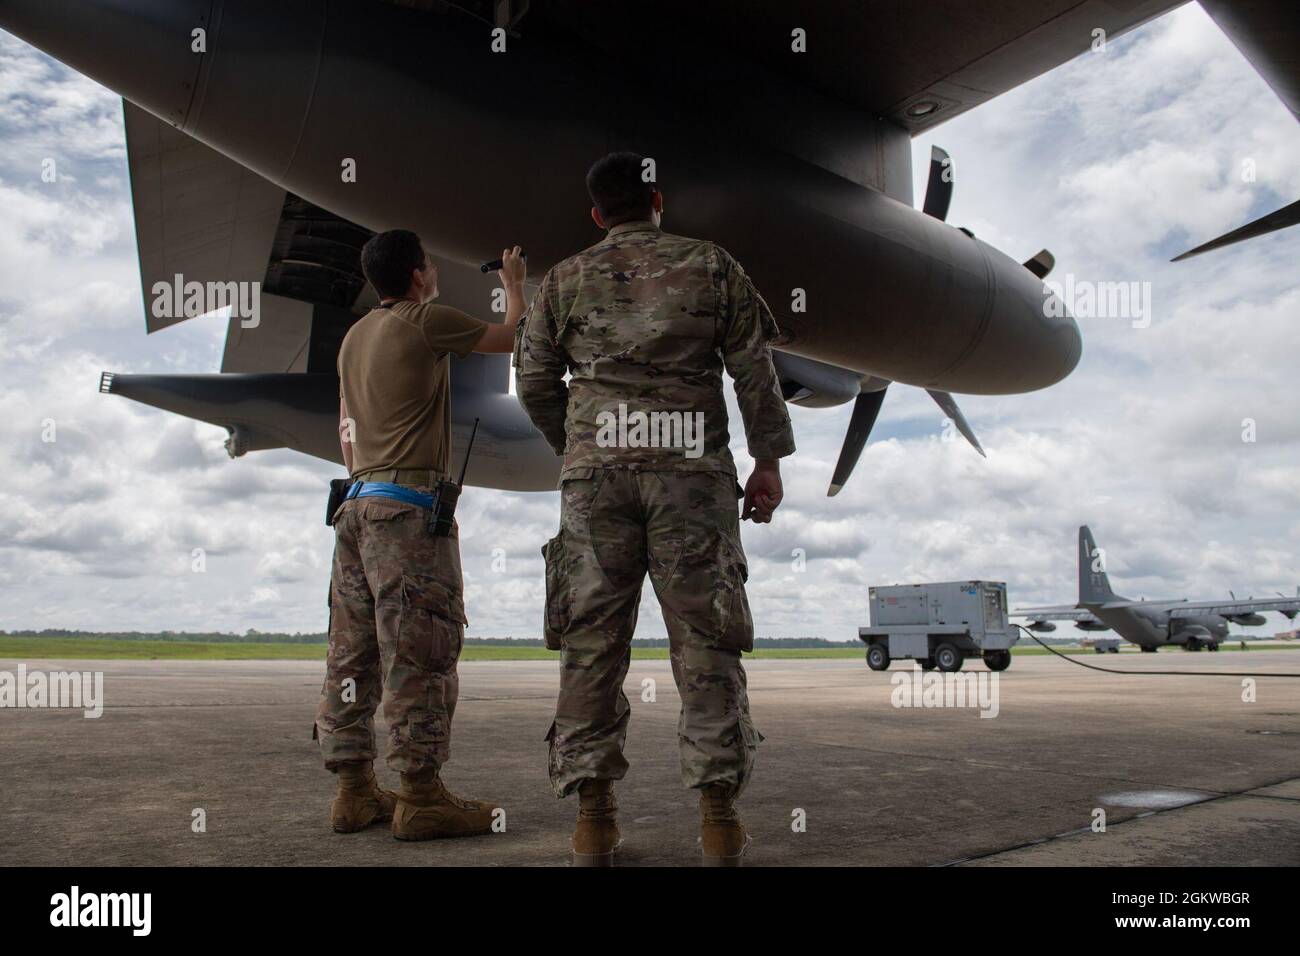 Sergent-chef de la Force aérienne des États-Unis Ramiro Gonzalez, 71e Superintendant de la production de l'unité de maintenance de l'aéronef, à gauche, et premier Airman Armando Rios, 71e chef d'équipage de l'UMA, inspectent l'aile d'un HC-130J combat King II lors d'une libération exceptionnelle à la base aérienne Moody, Géorgie, le 8 juillet 2021. Les aviateurs effectuent des examens de libération et d'entretien exceptionnels de l'ensemble de la cellule afin d'améliorer les performances et la sécurité globales. Banque D'Images